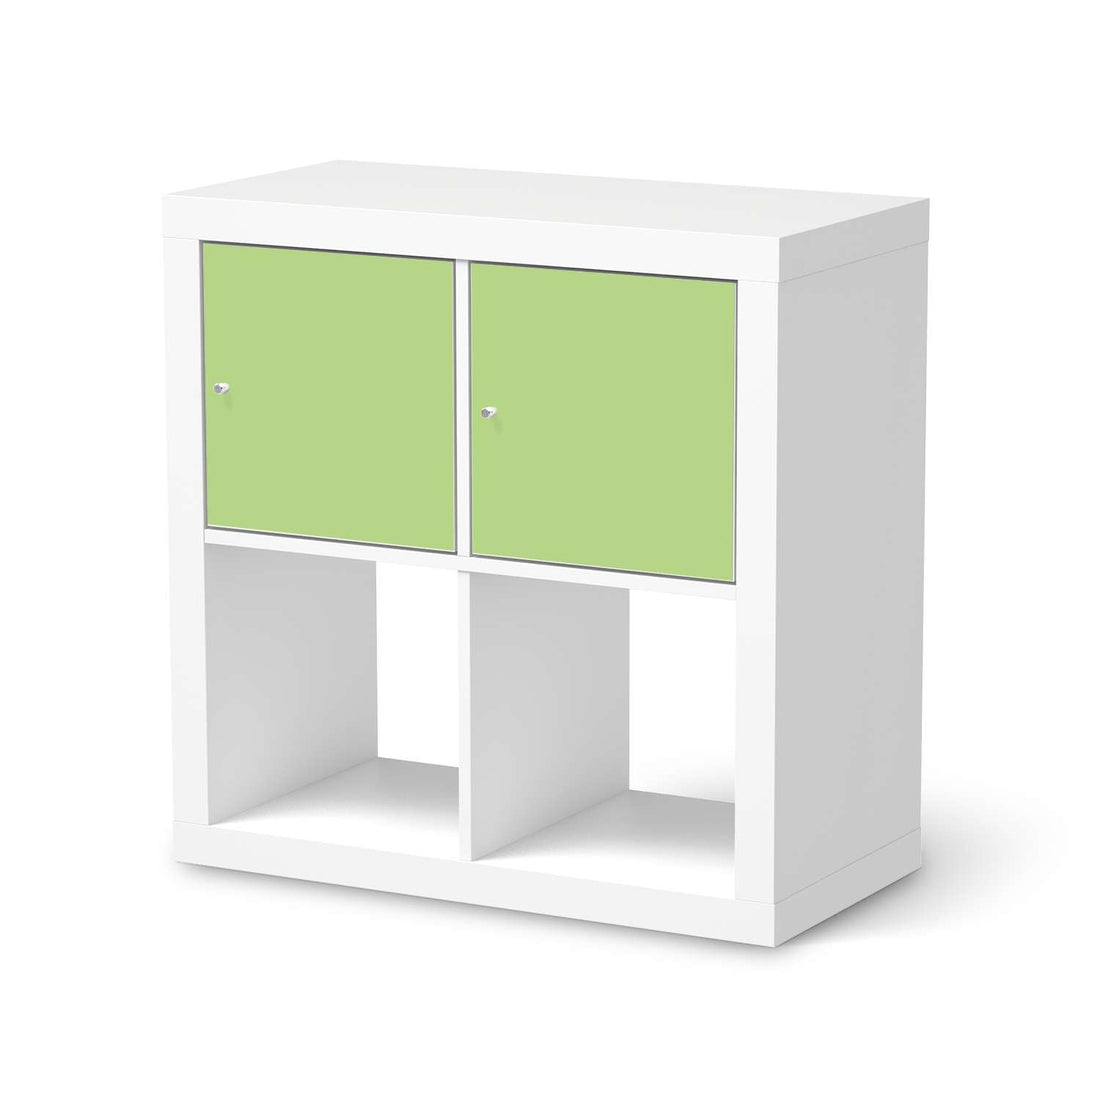 Möbel Klebefolie Hellgrün Light - IKEA Expedit Regal 2 Türen Quer  - weiss